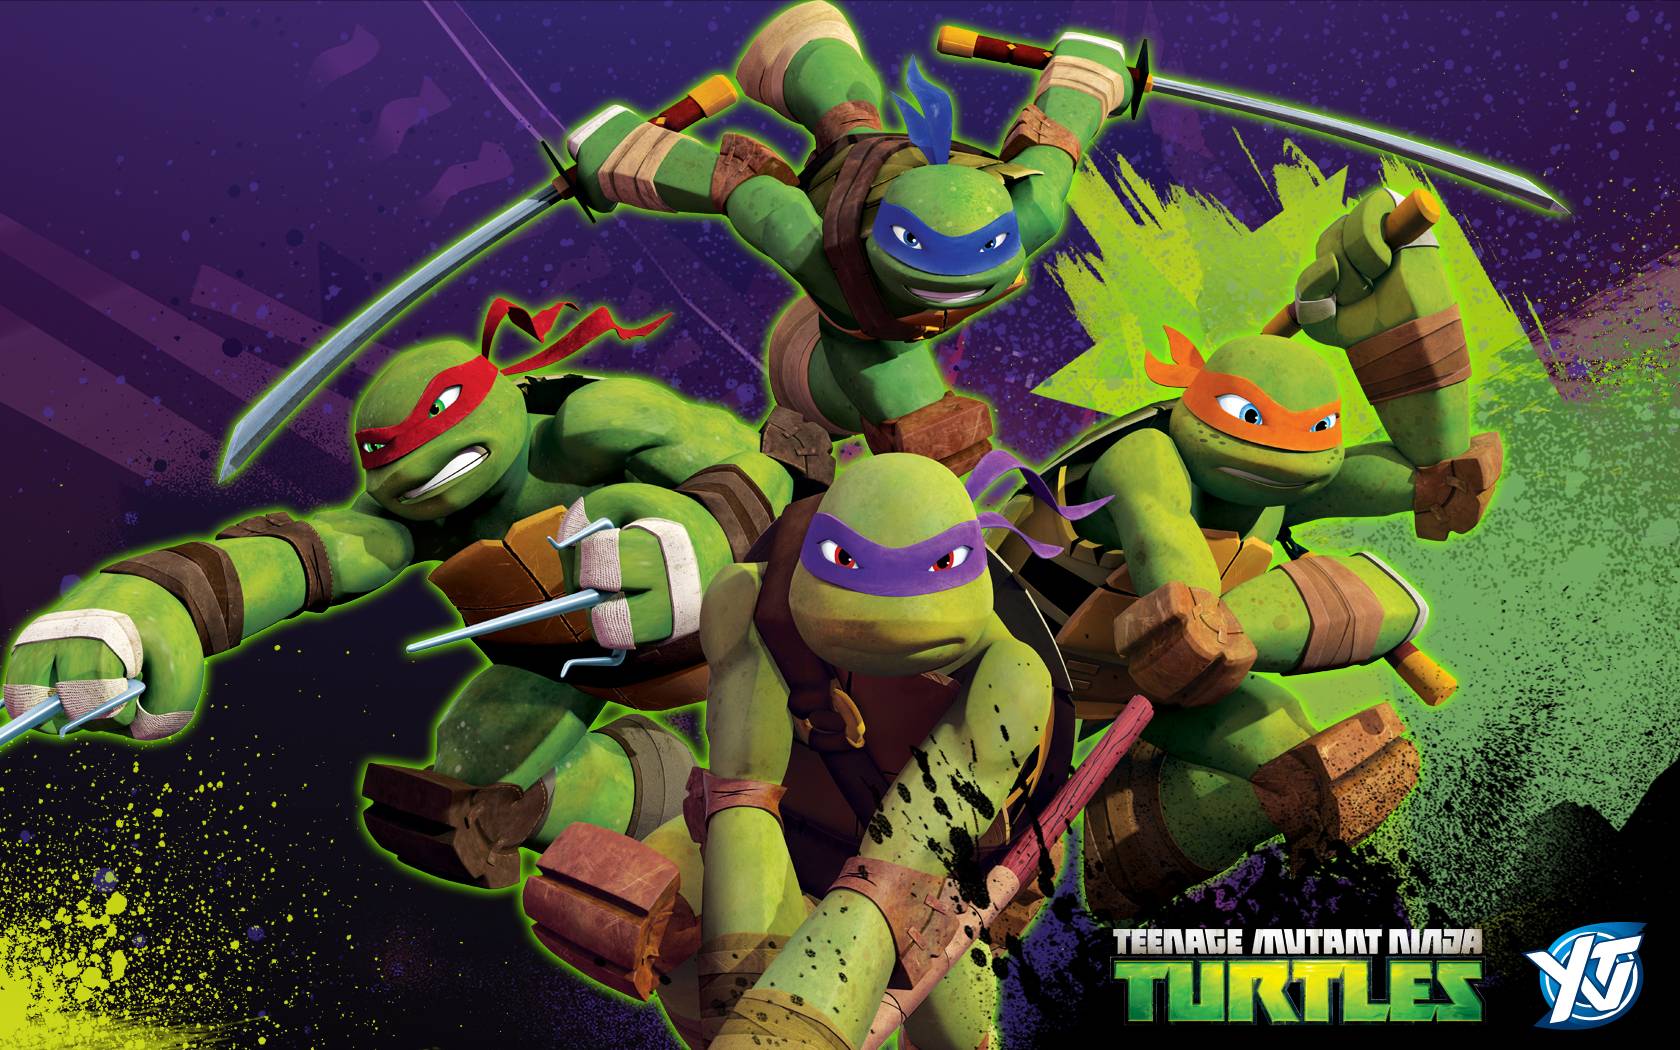 Teenage Mutant Ninja Turtles Wallpaper - Free Android Application ...